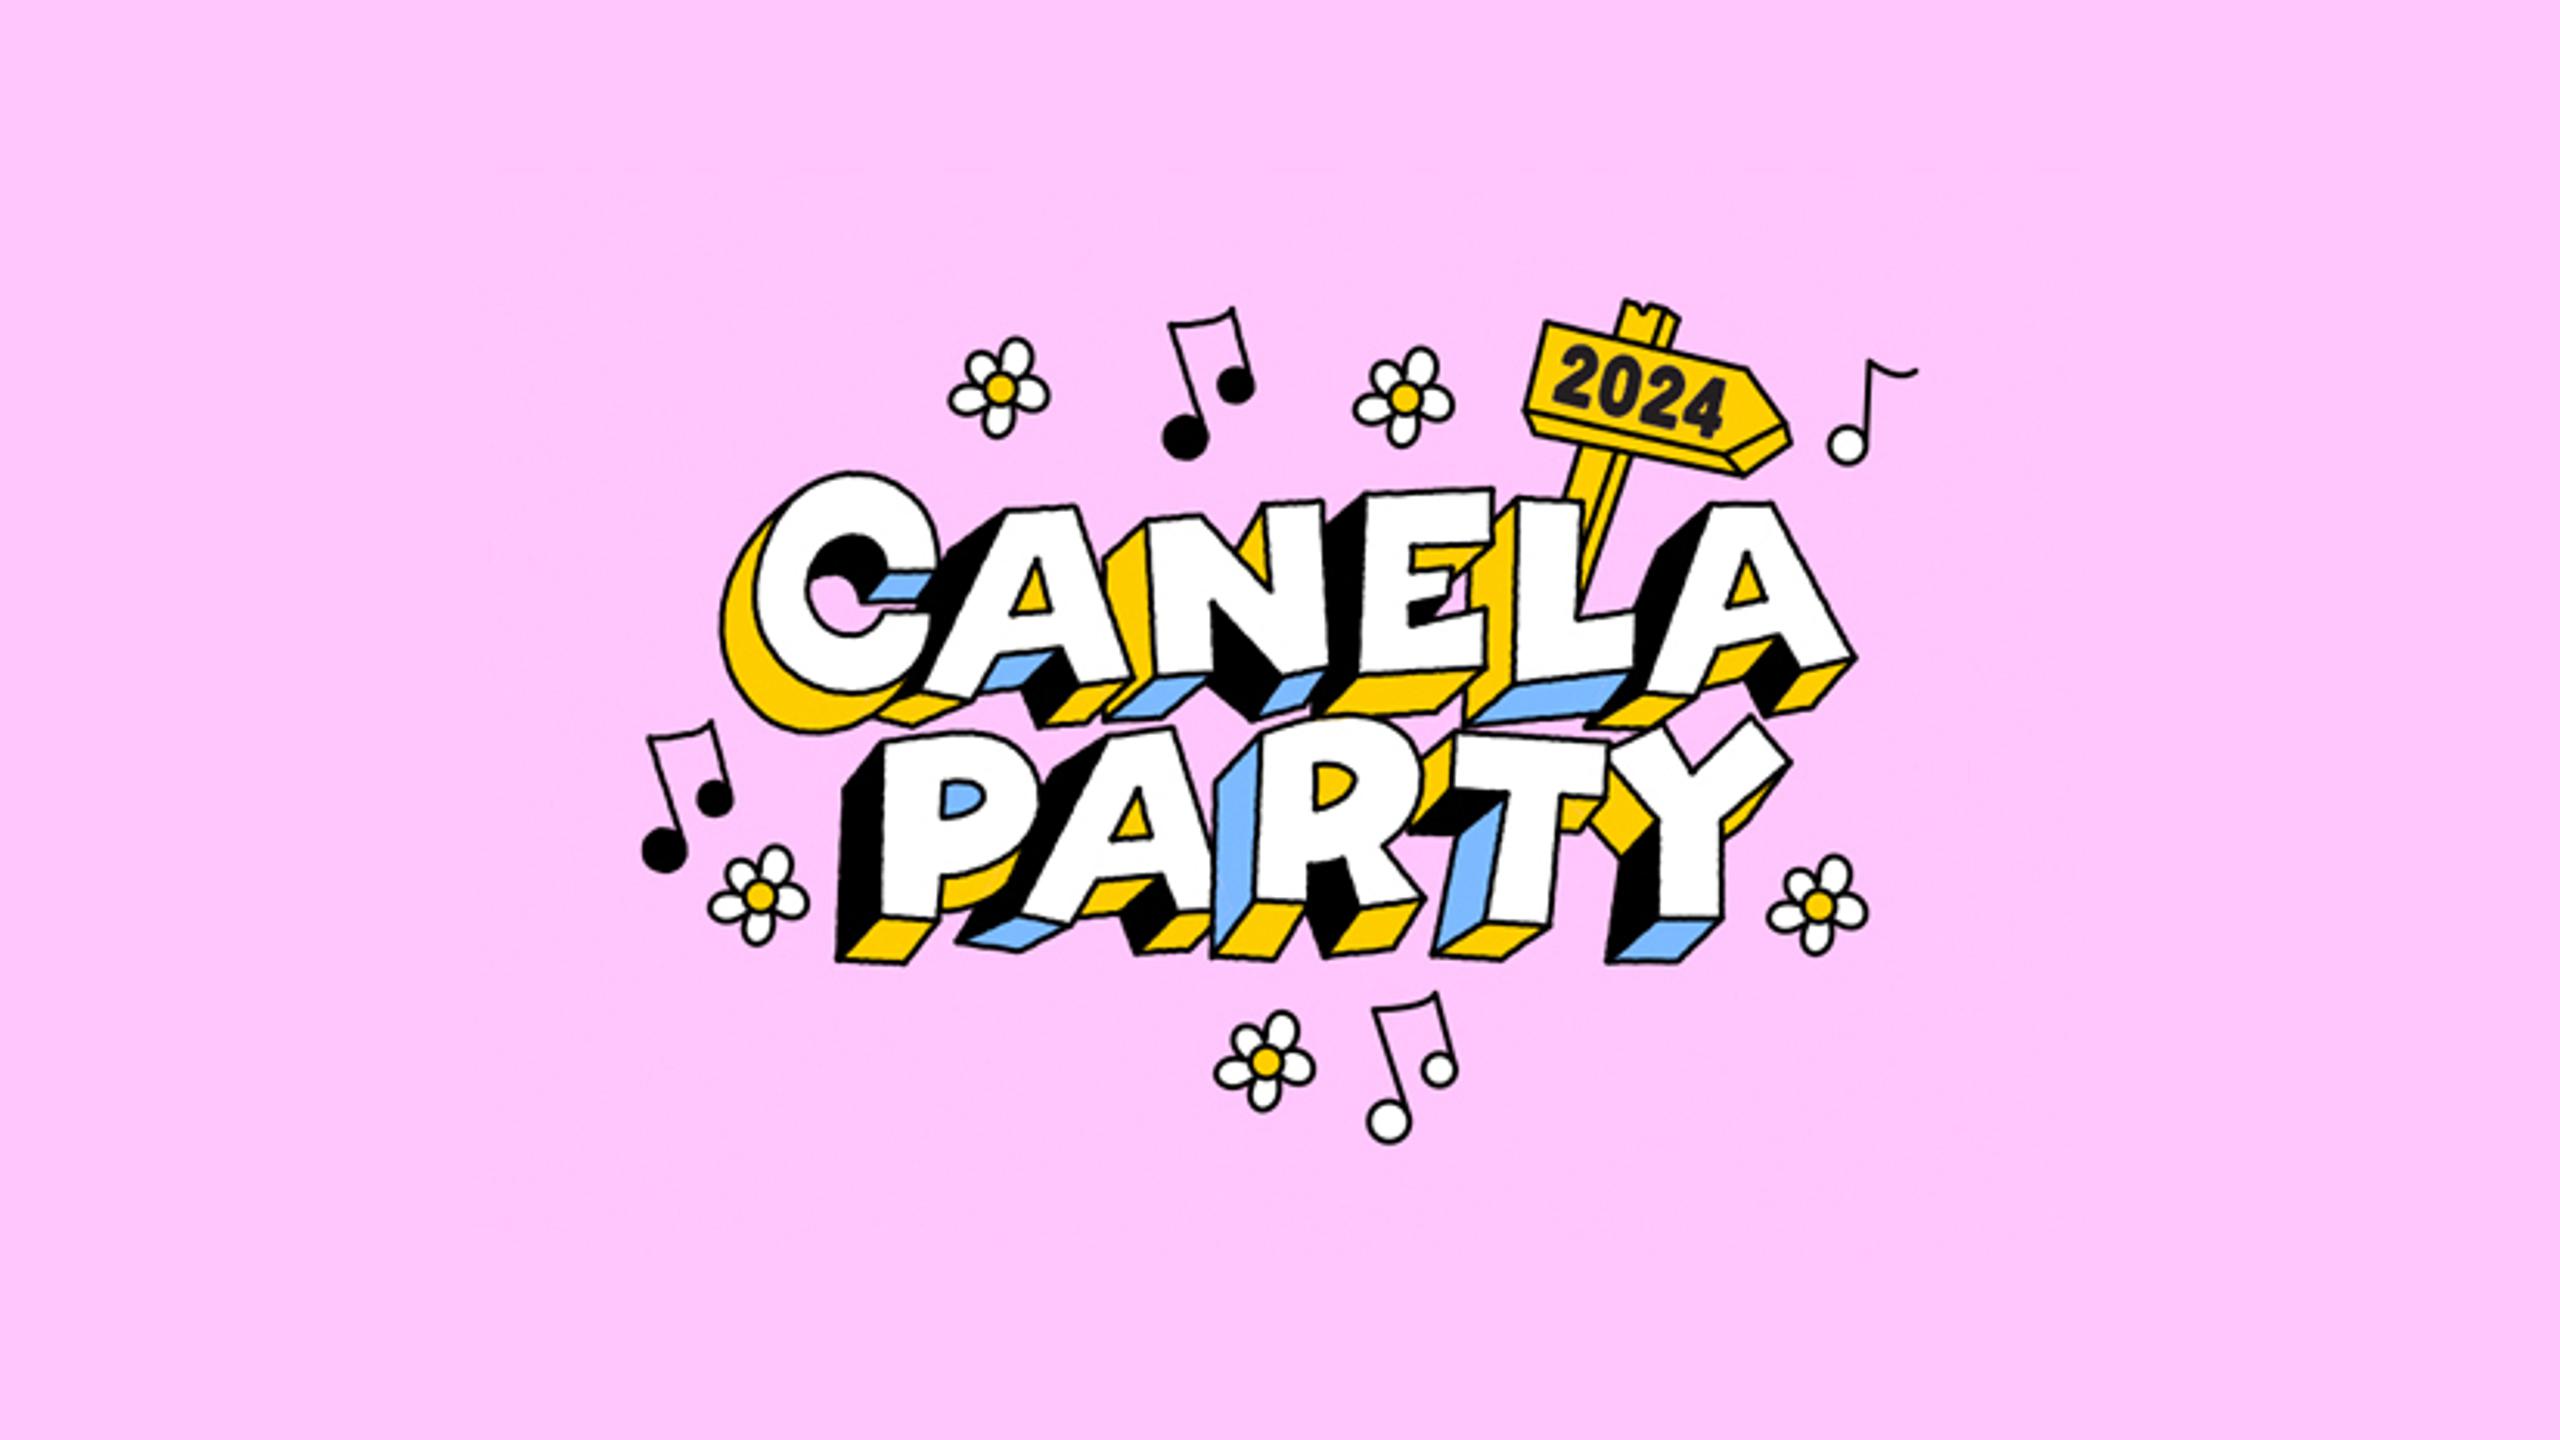 Fotografía promocional de Canela Party 2024